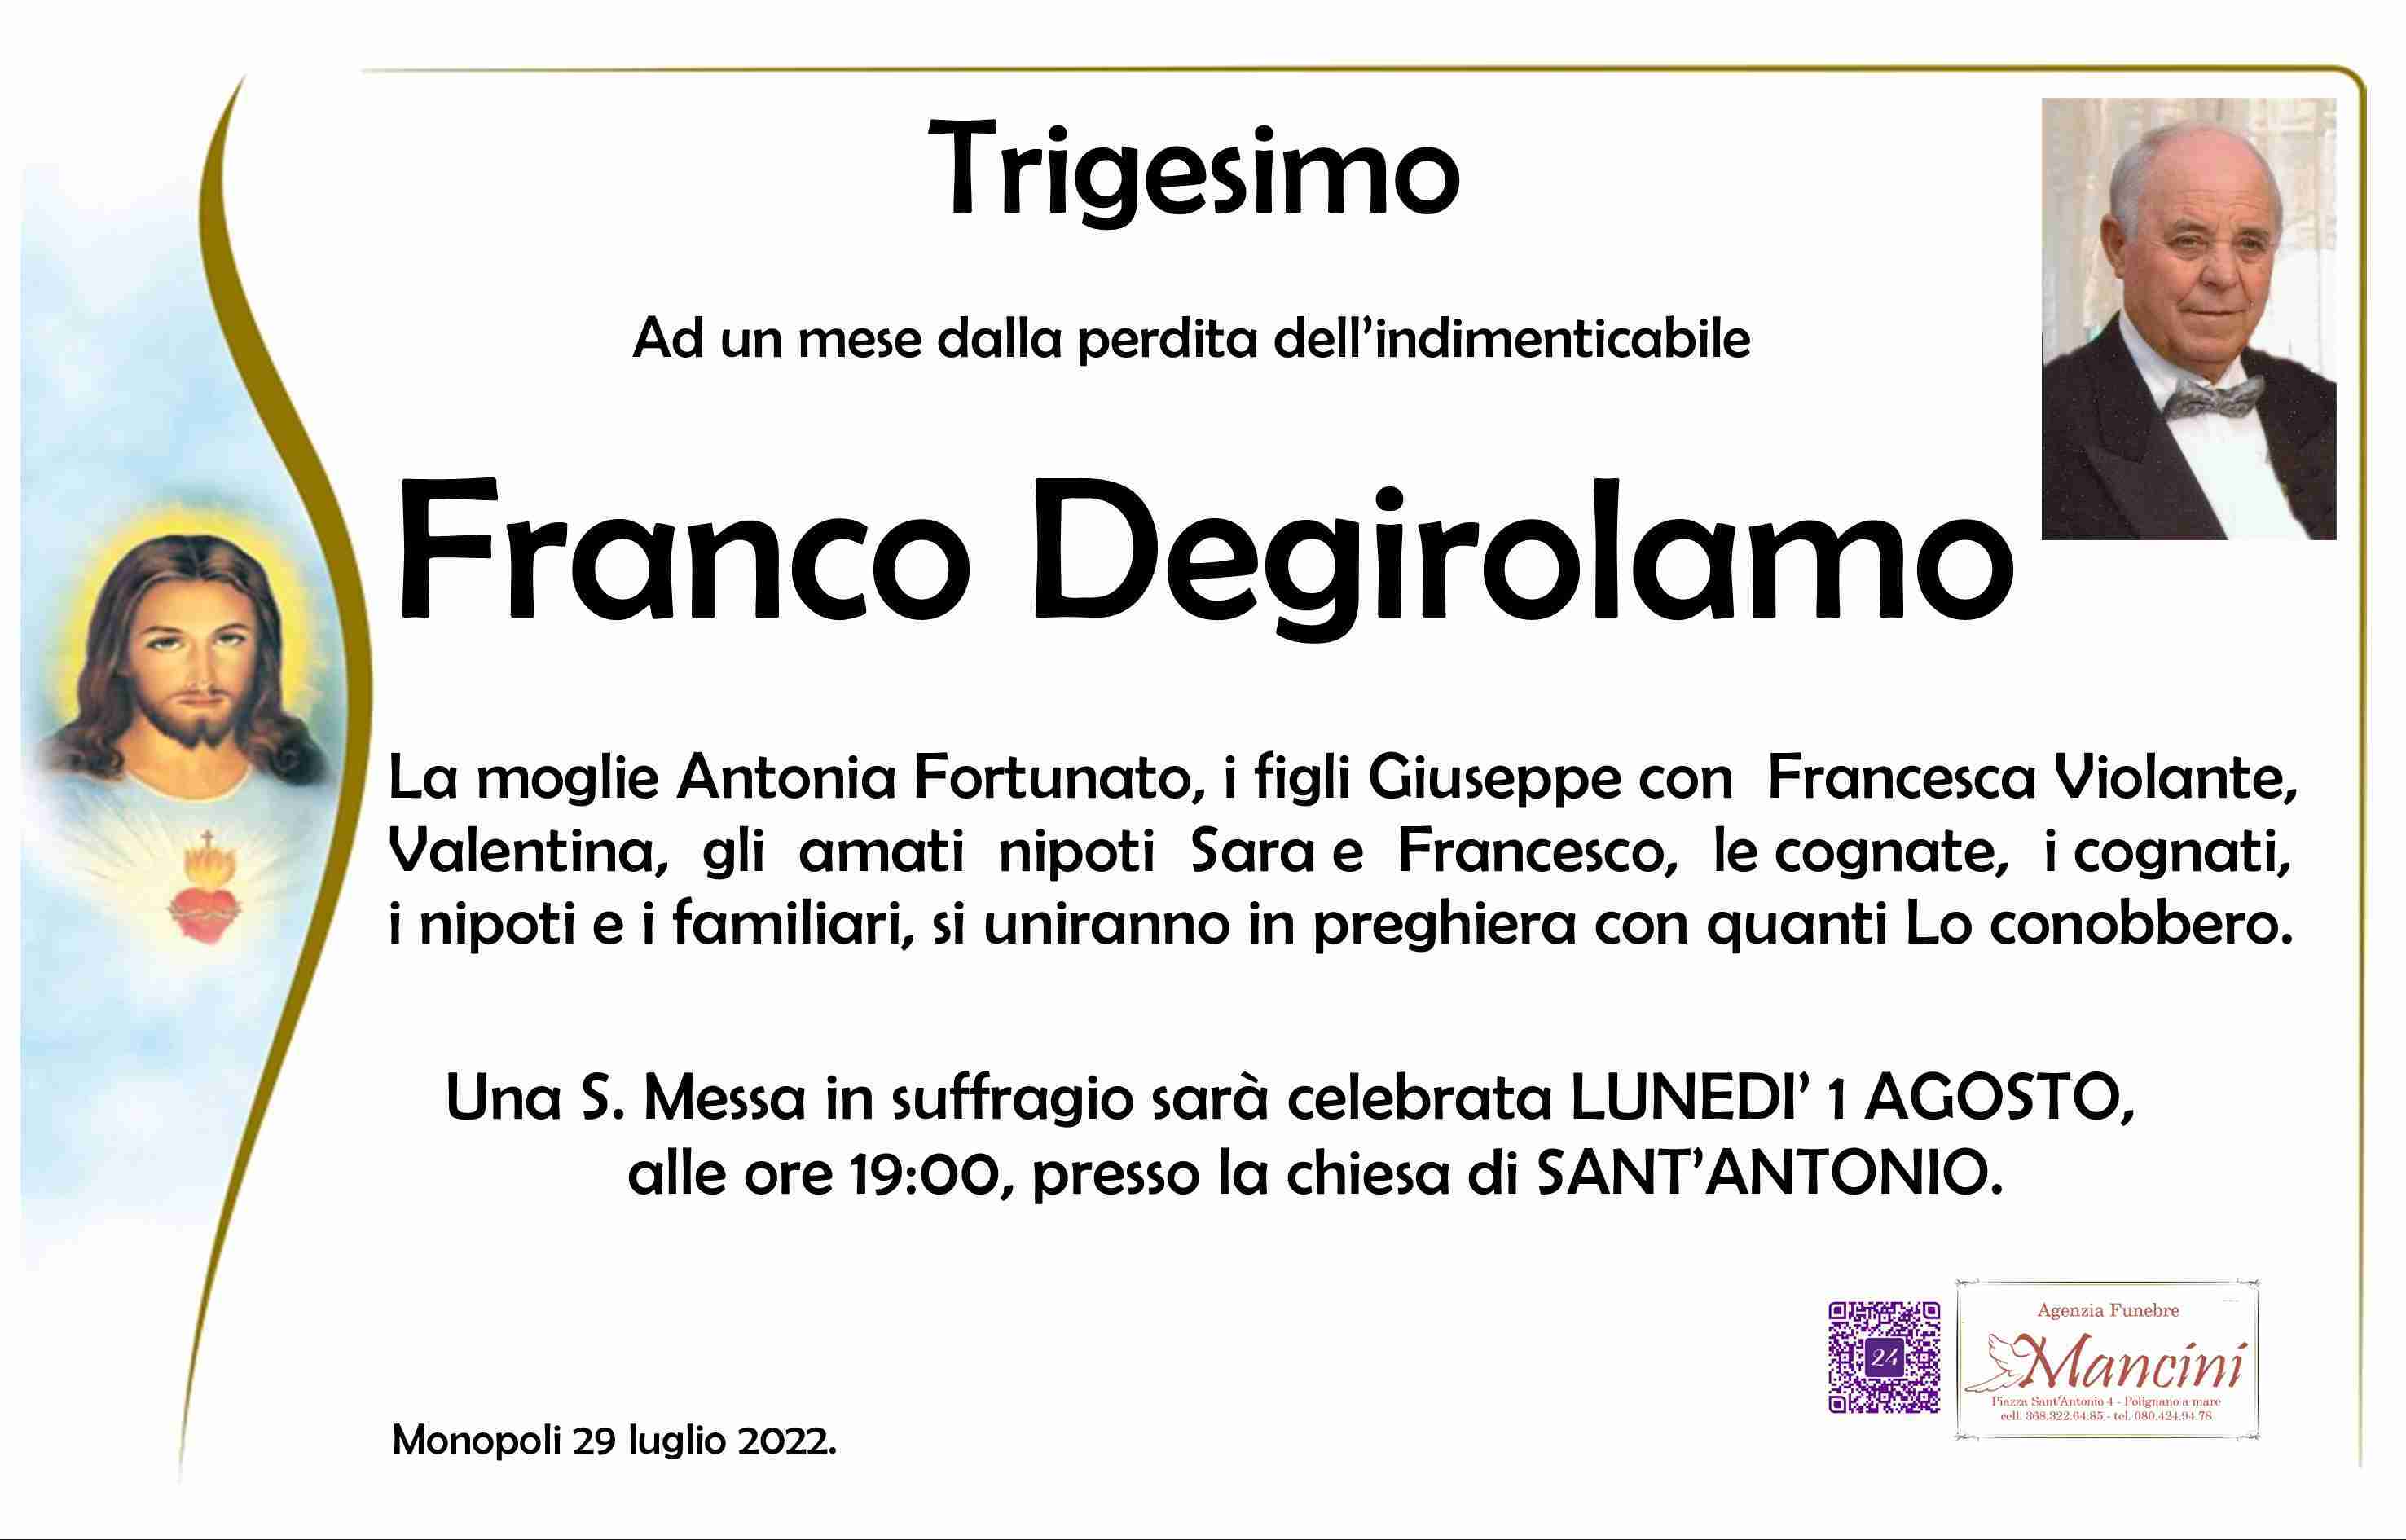 Franco Degirolamo